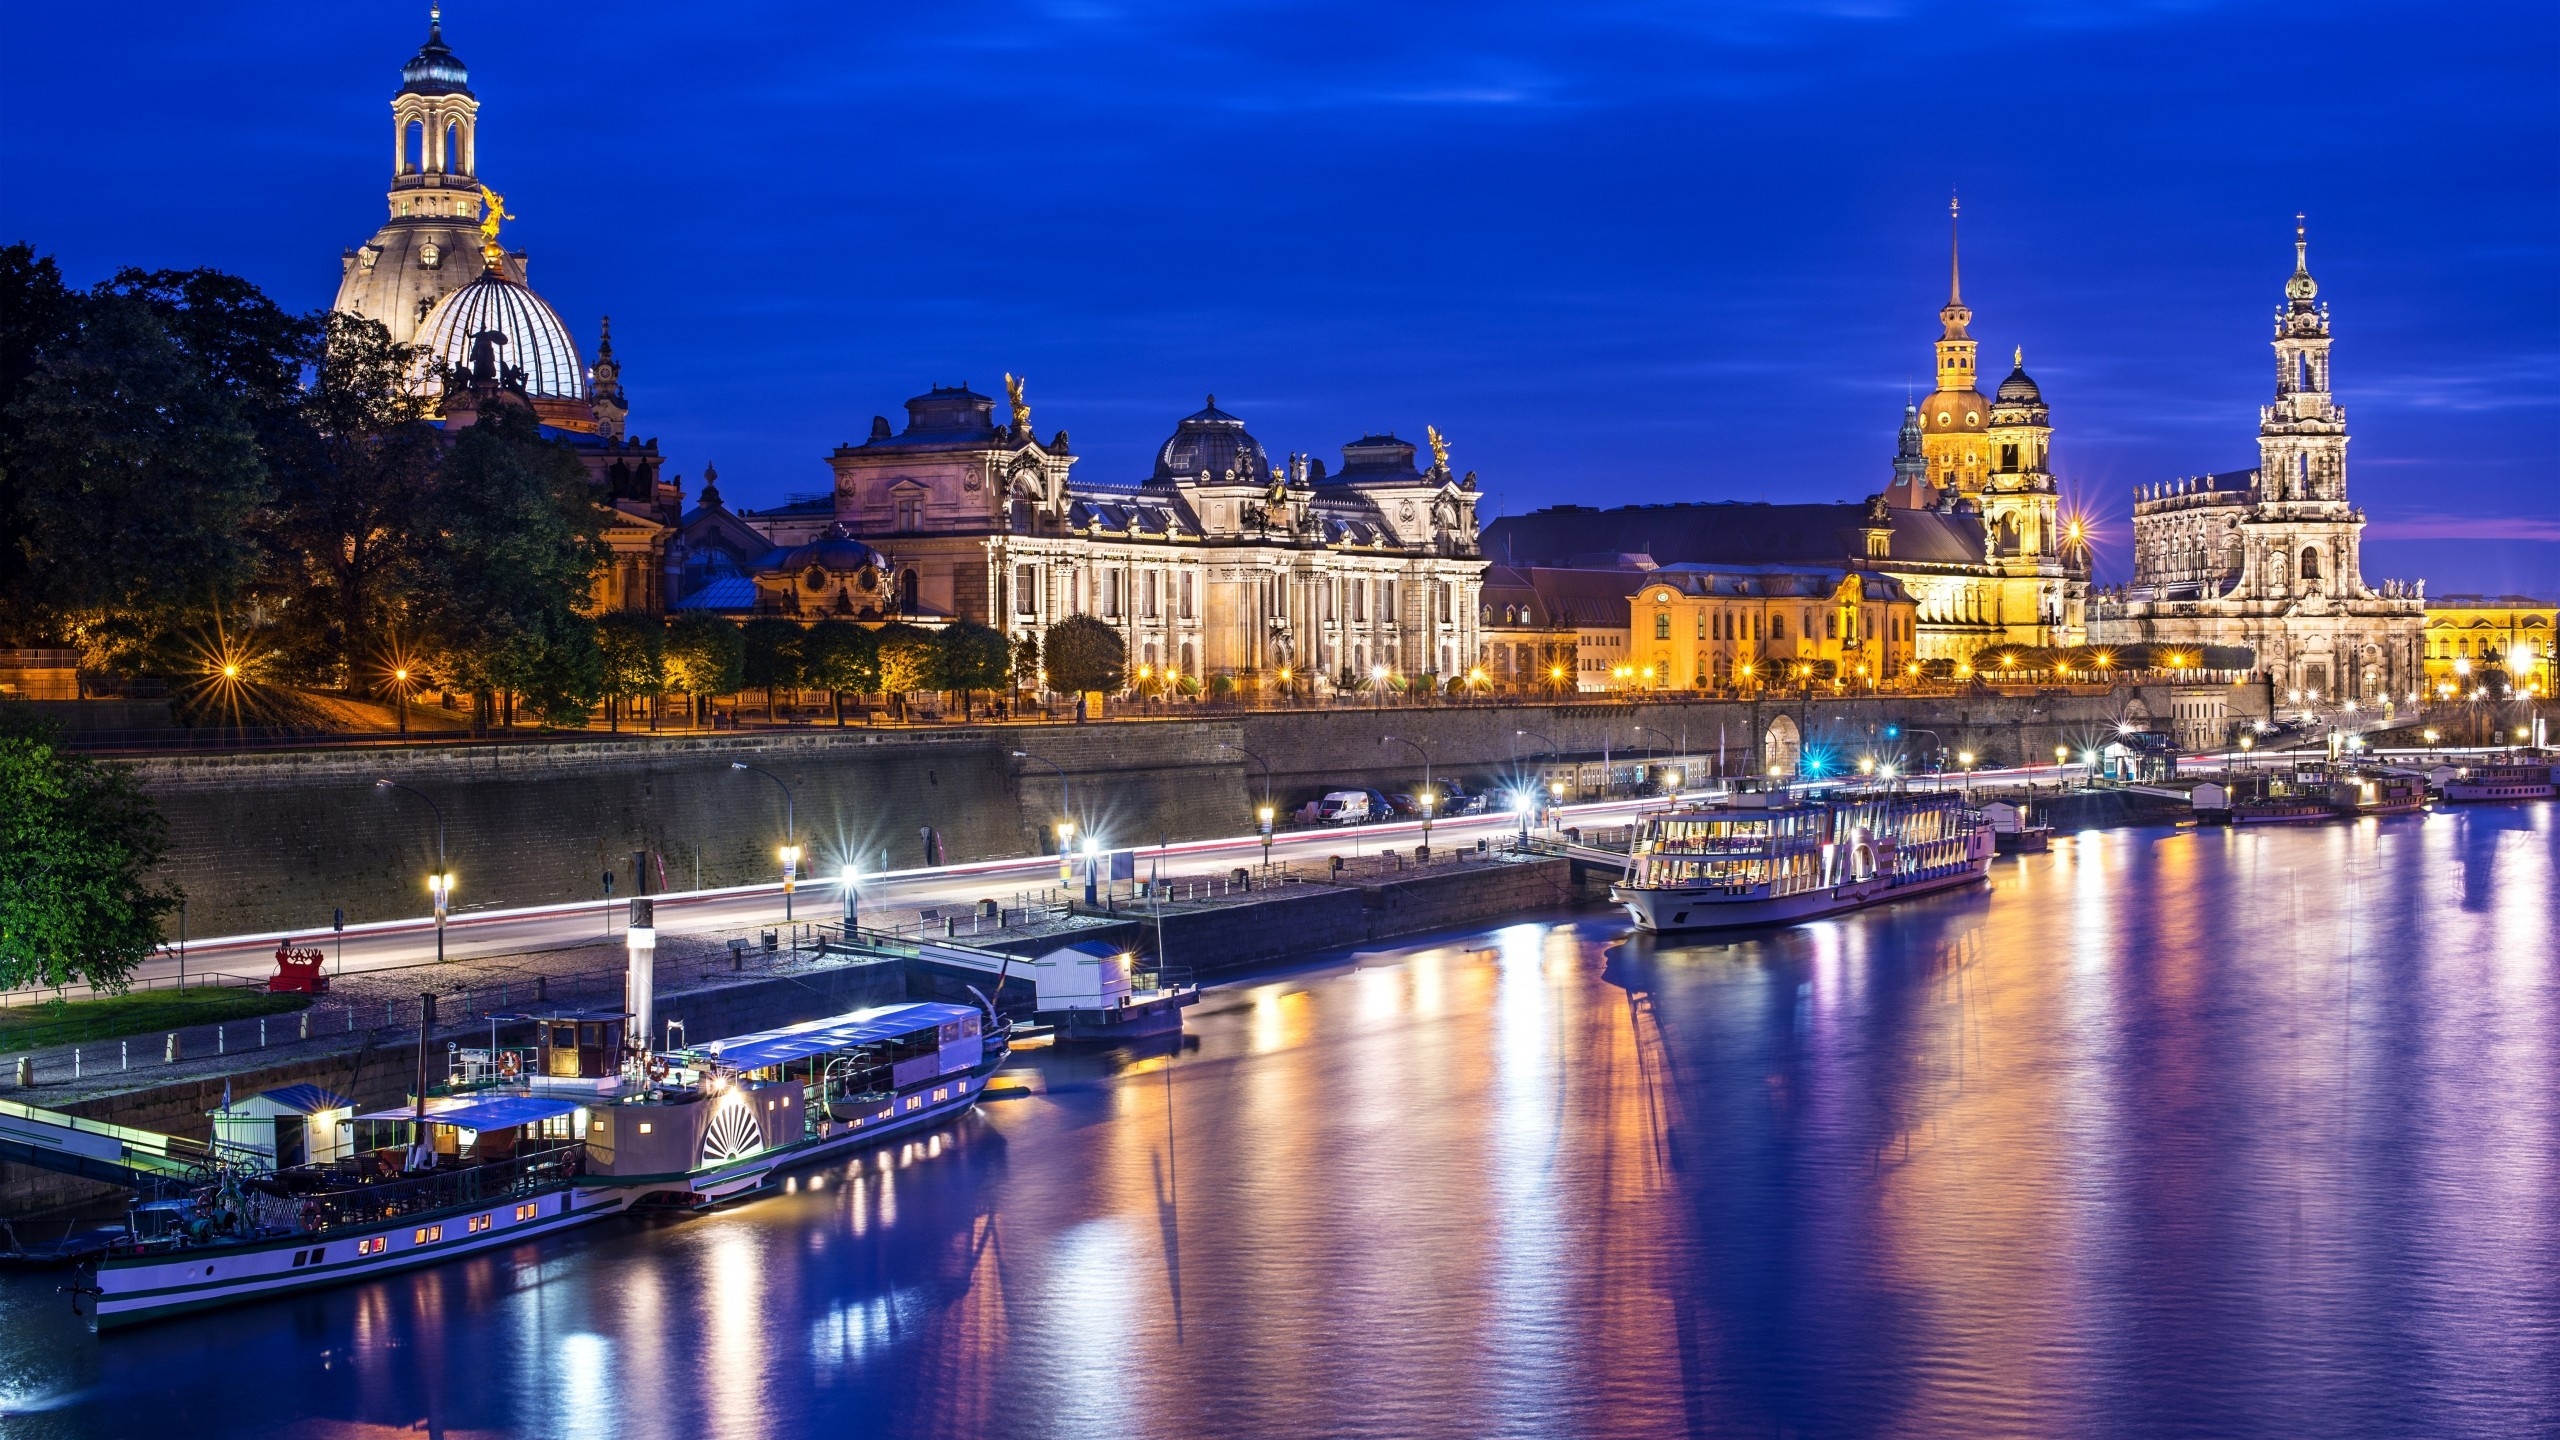 City of Dresden for 2560x1440 HDTV resolution